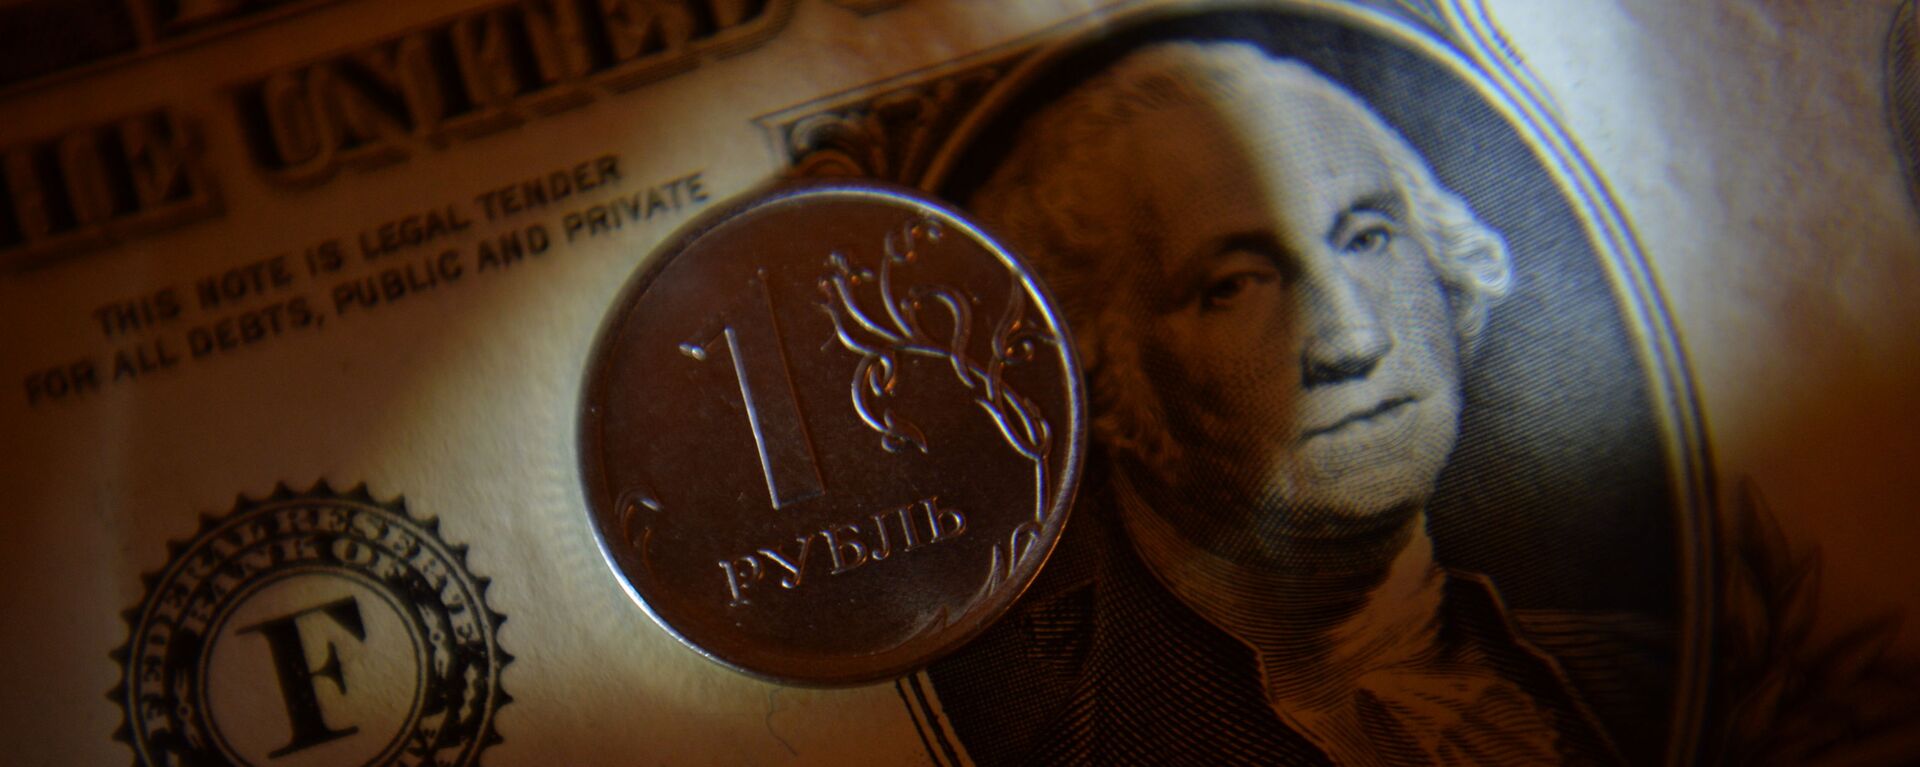 Монета номиналом один рубль и банкнота достоинством в один доллар США - Sputnik Беларусь, 1920, 28.01.2021